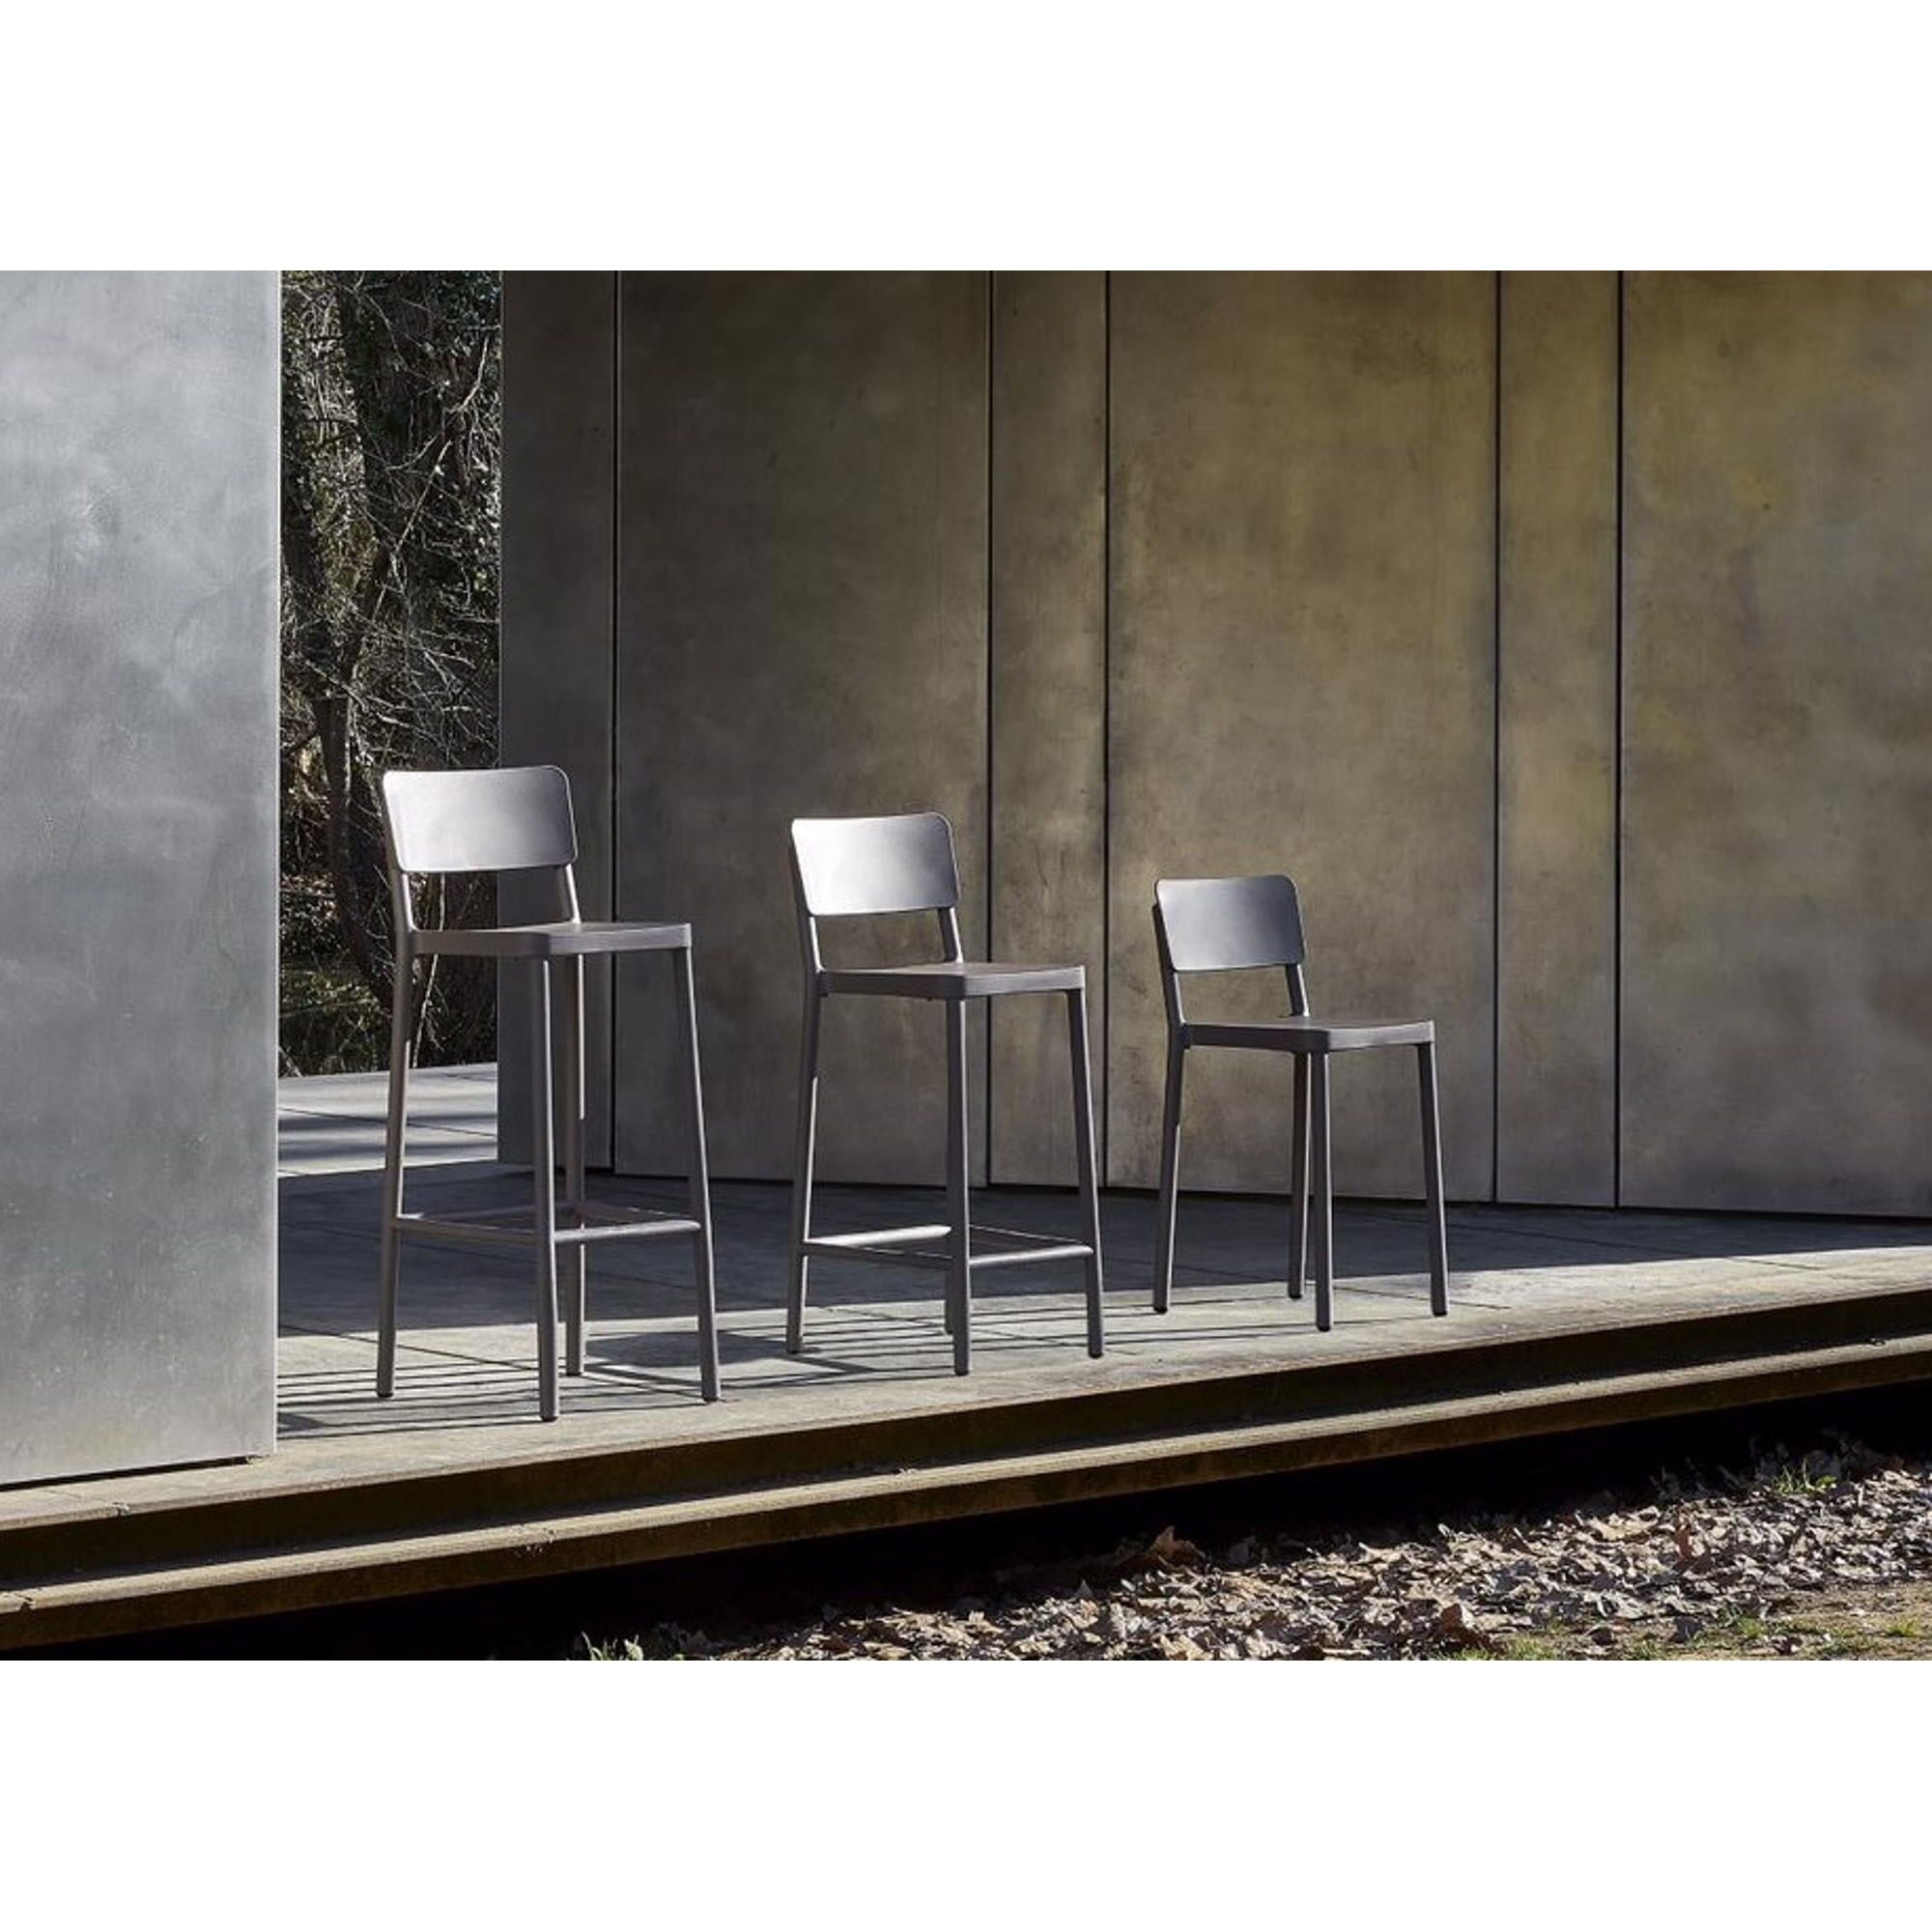 Resol lisboa low stool indoor, outdoor olive green